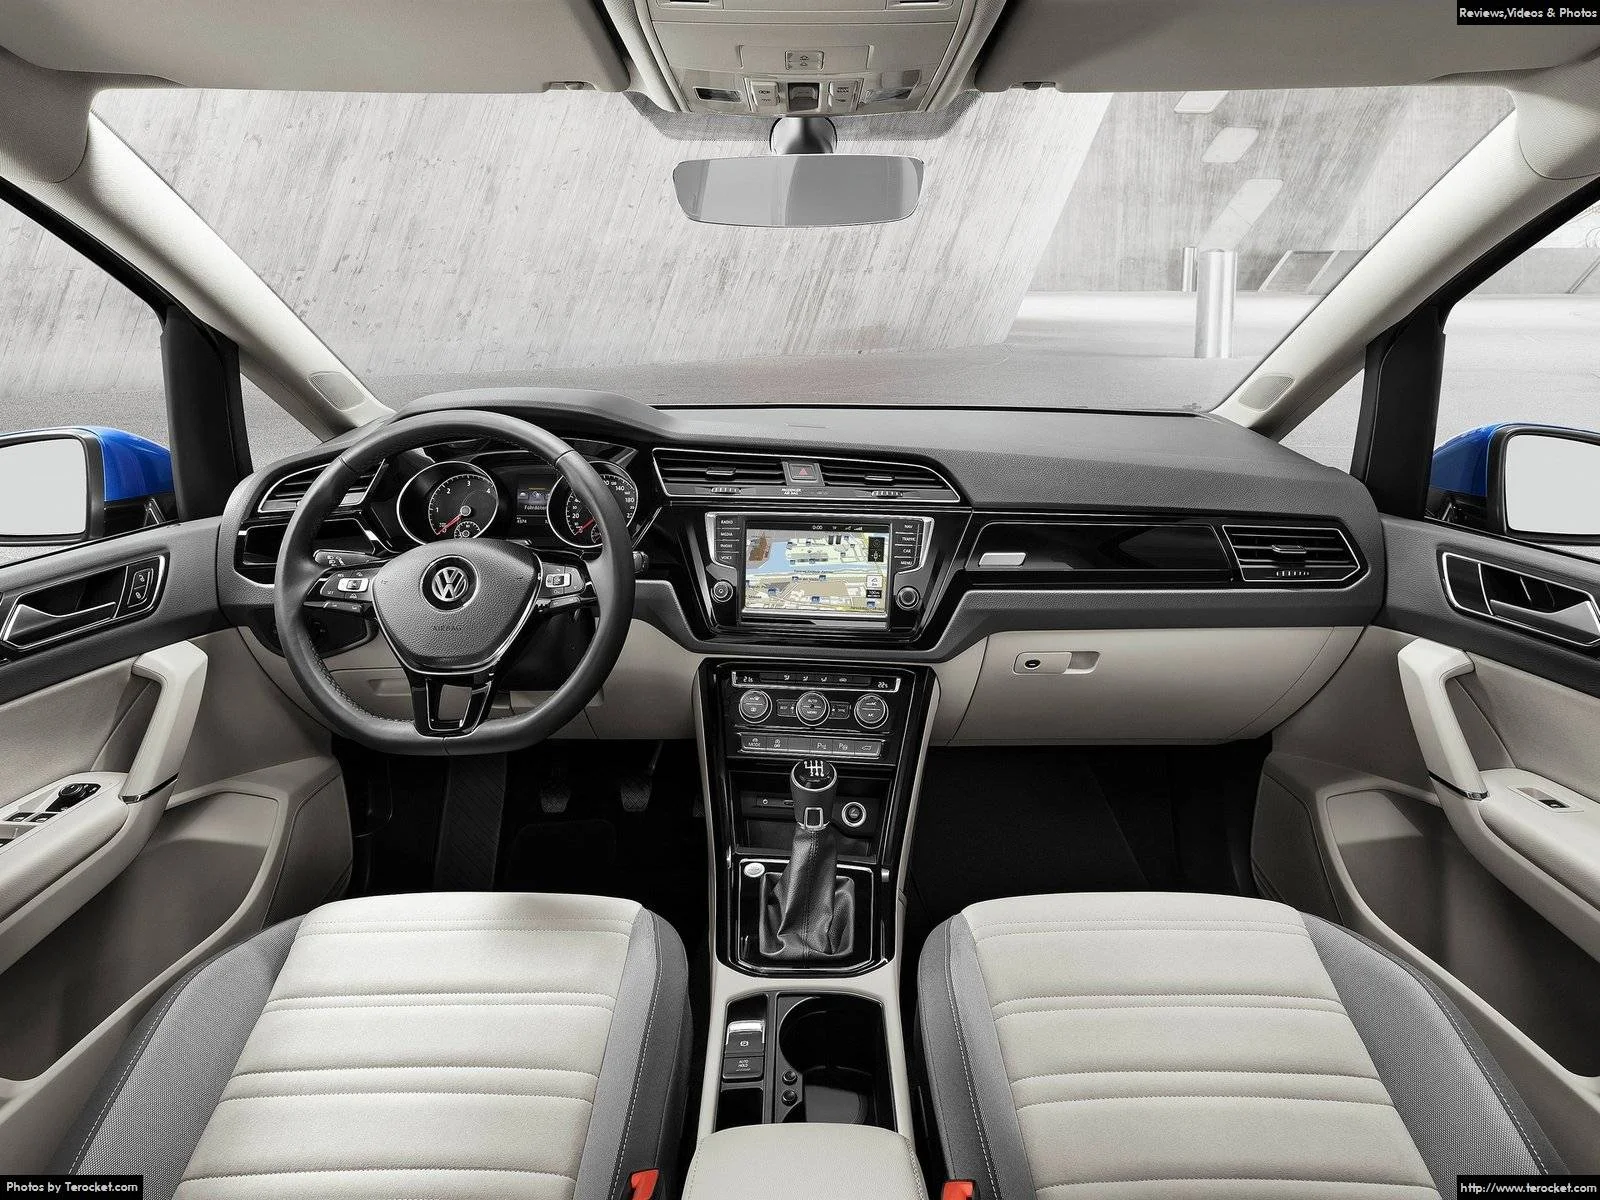 Hình ảnh xe ô tô Volkswagen Touran 2016 & nội ngoại thất